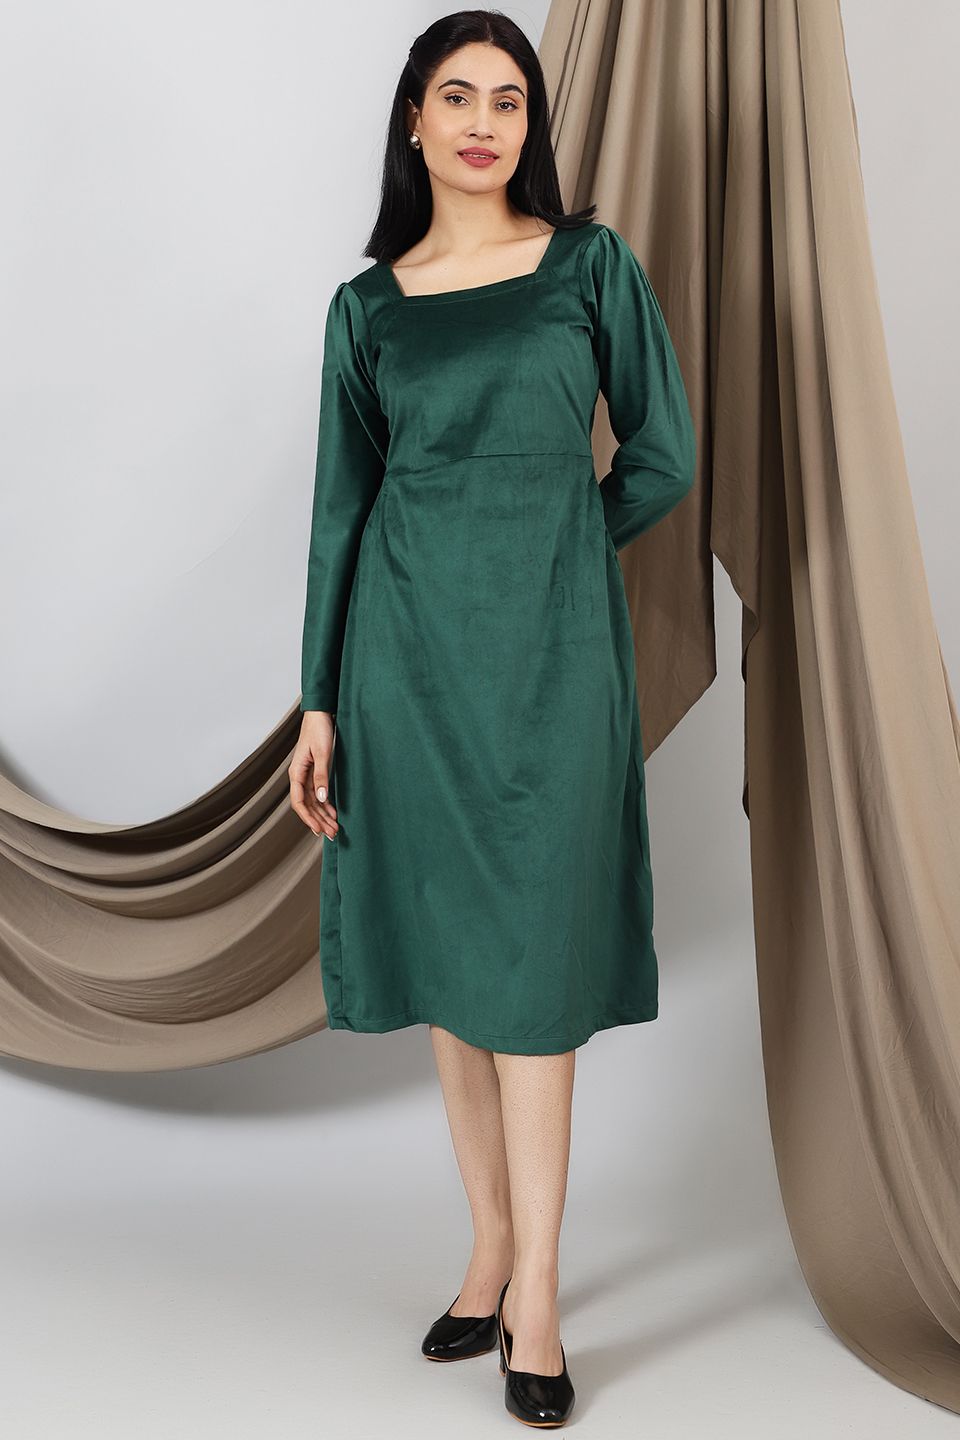 Velvet-Green-Cotton-Midi-Dress-DS323